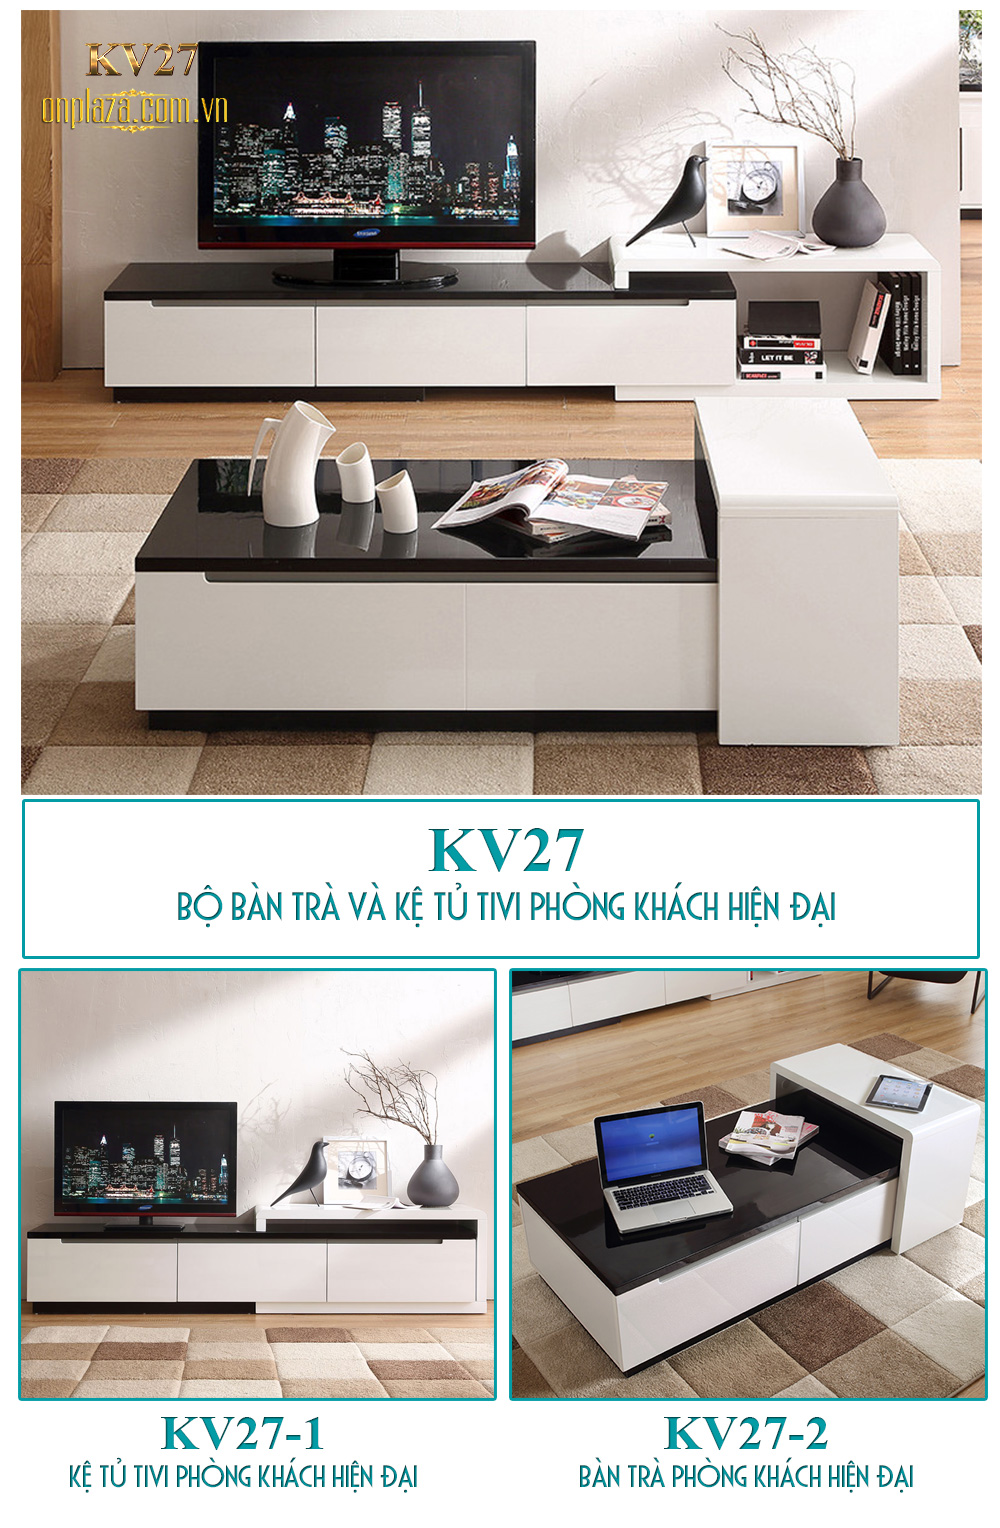 Bộ bàn trà và kệ tủ tivi phòng khách hiện đại nhập khẩu cao cấp KV27